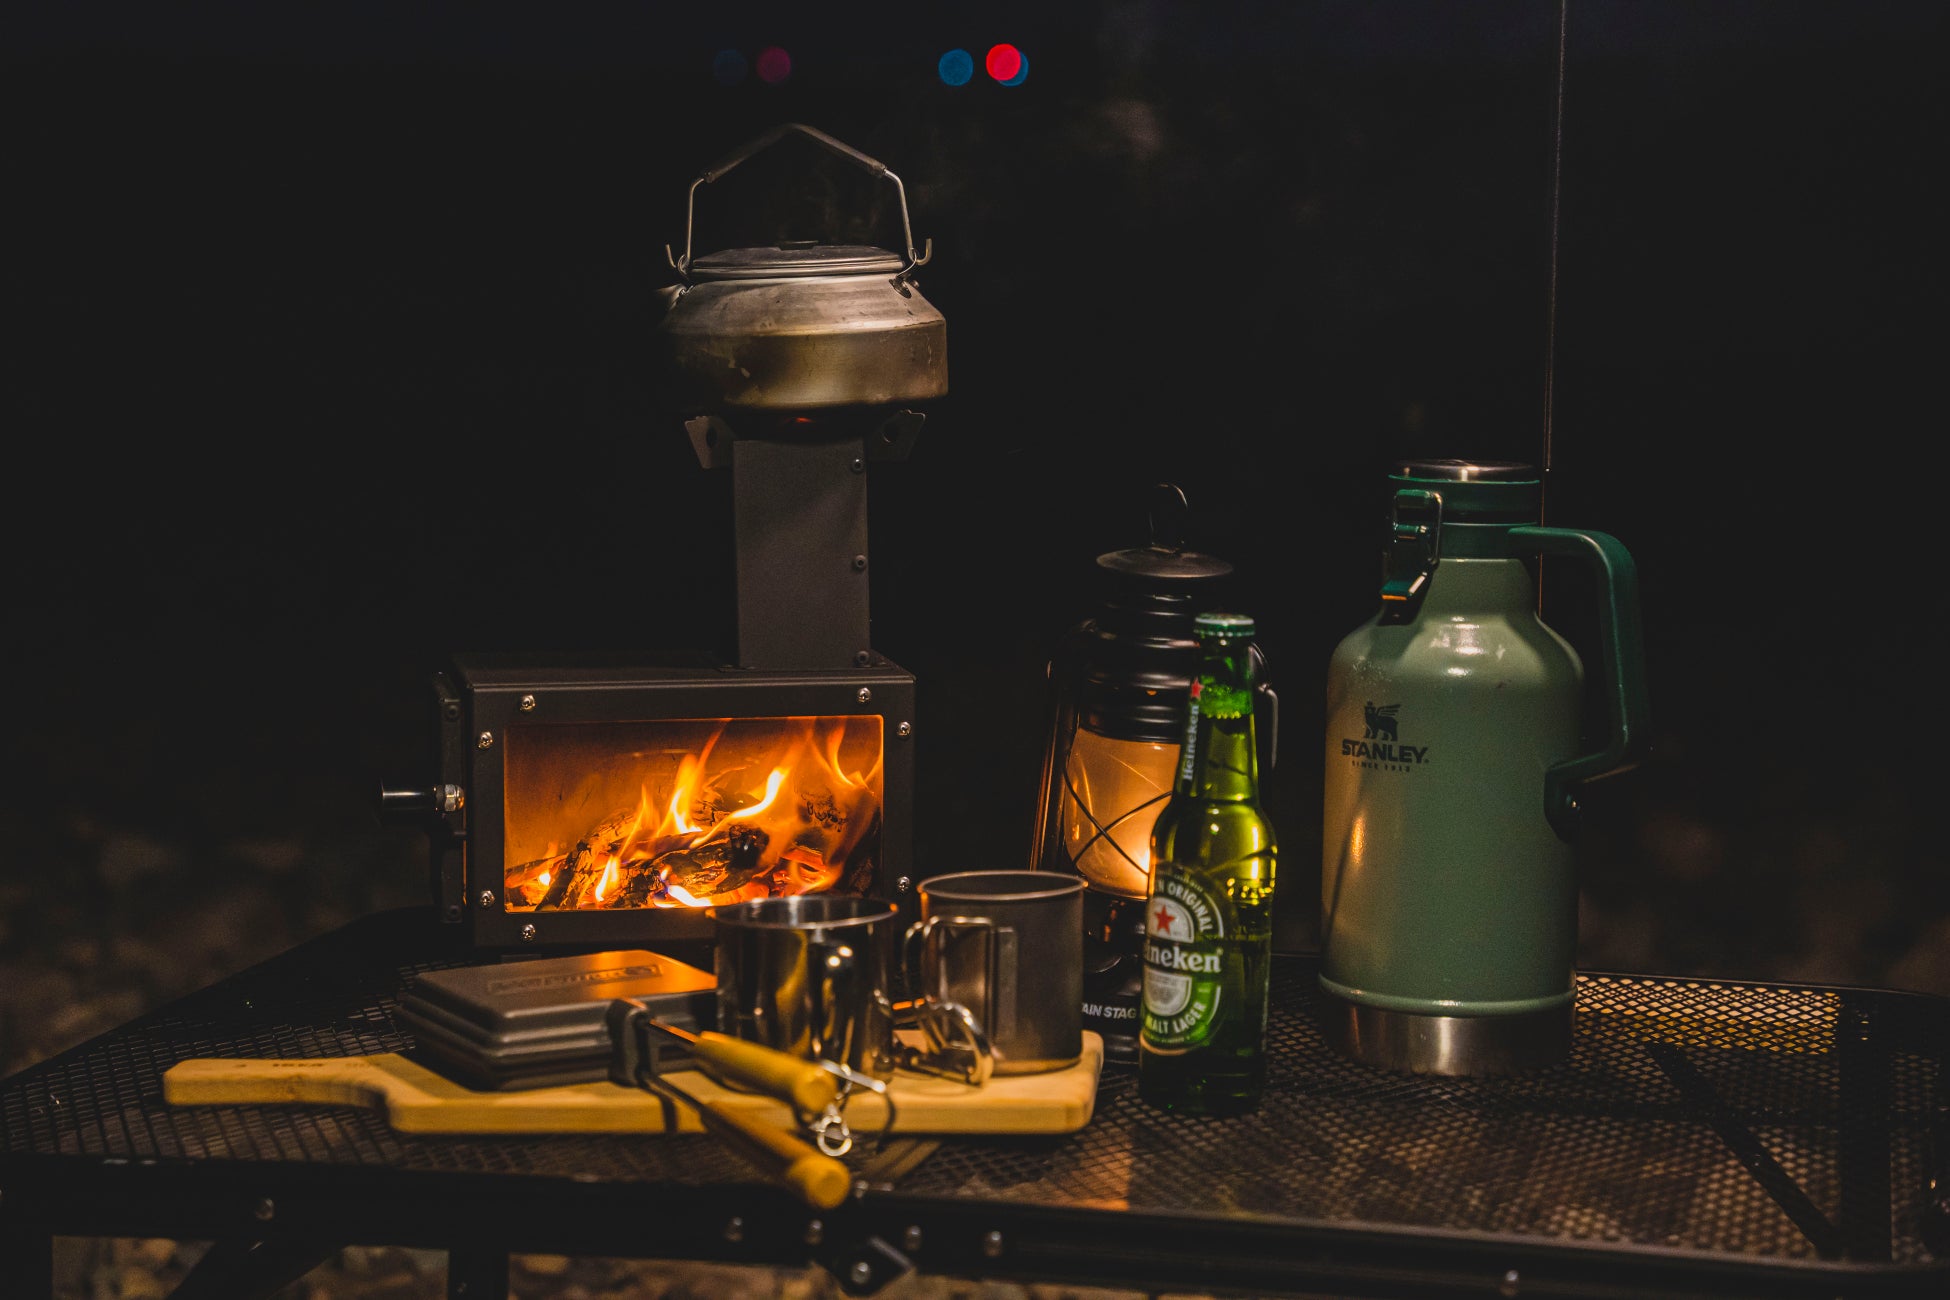 テーブルに置いて、揺れる炎を見ながらキャンプ飯を楽しめるコンパクト薪ストーブ「Dear Stove」をMakuakeで先行販売を開始しました。のサブ画像1